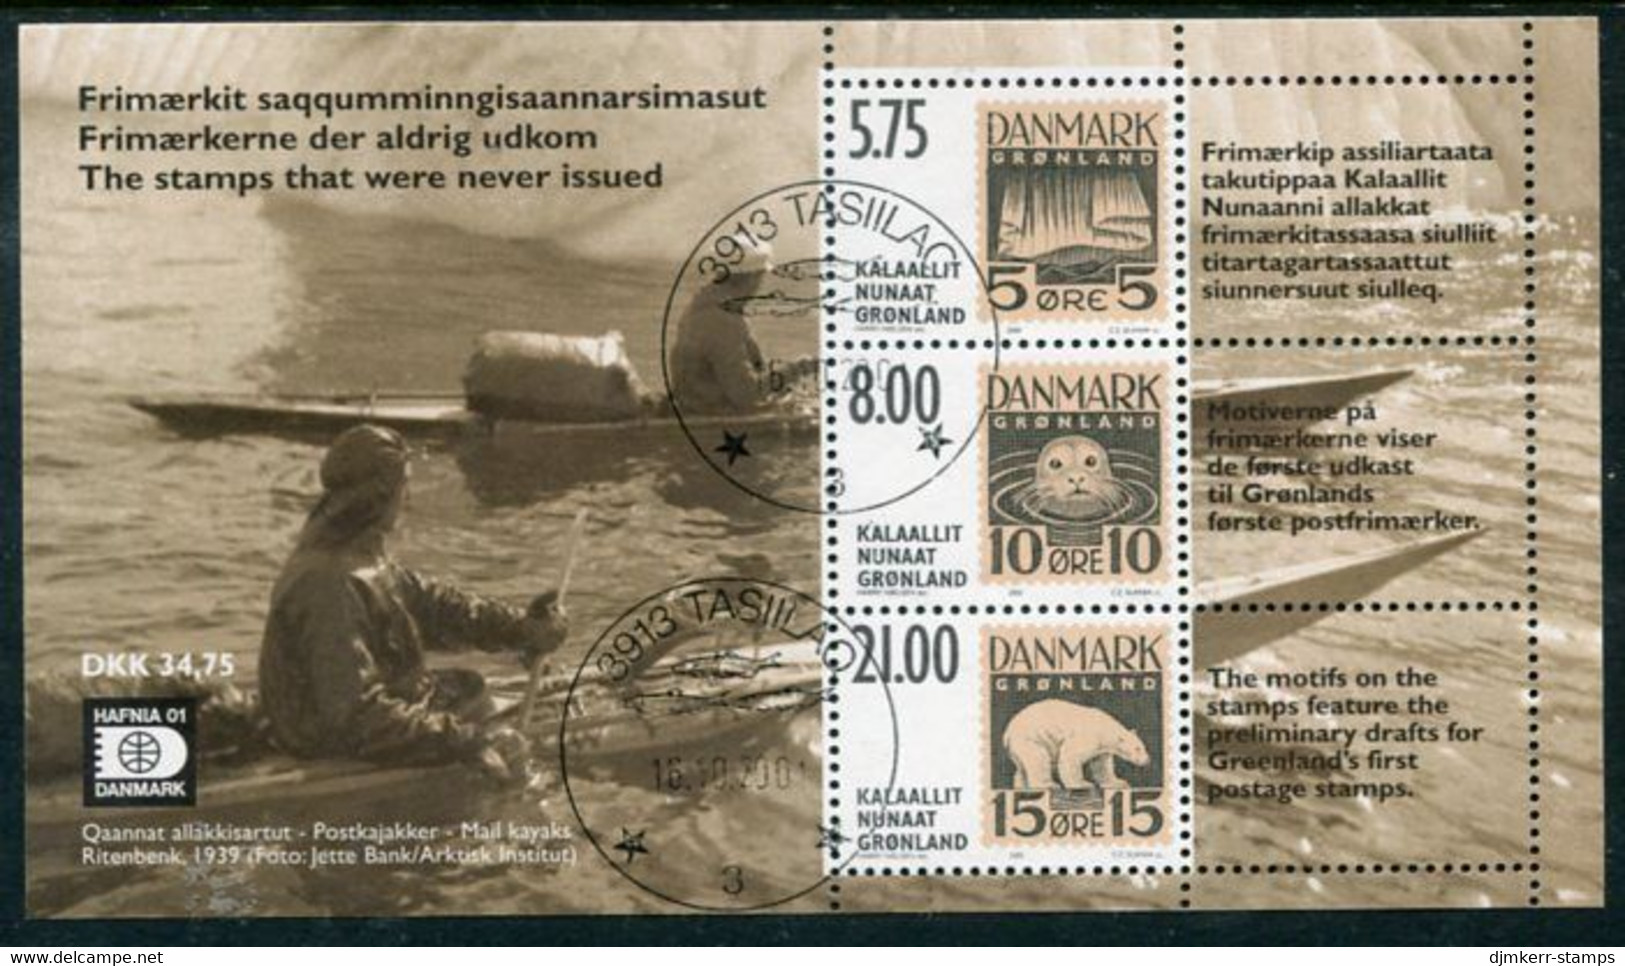 GREENLAND 2001 HAFNIA '01 Stamp Exhibition Block Used.  Michel Block 22 - Usati